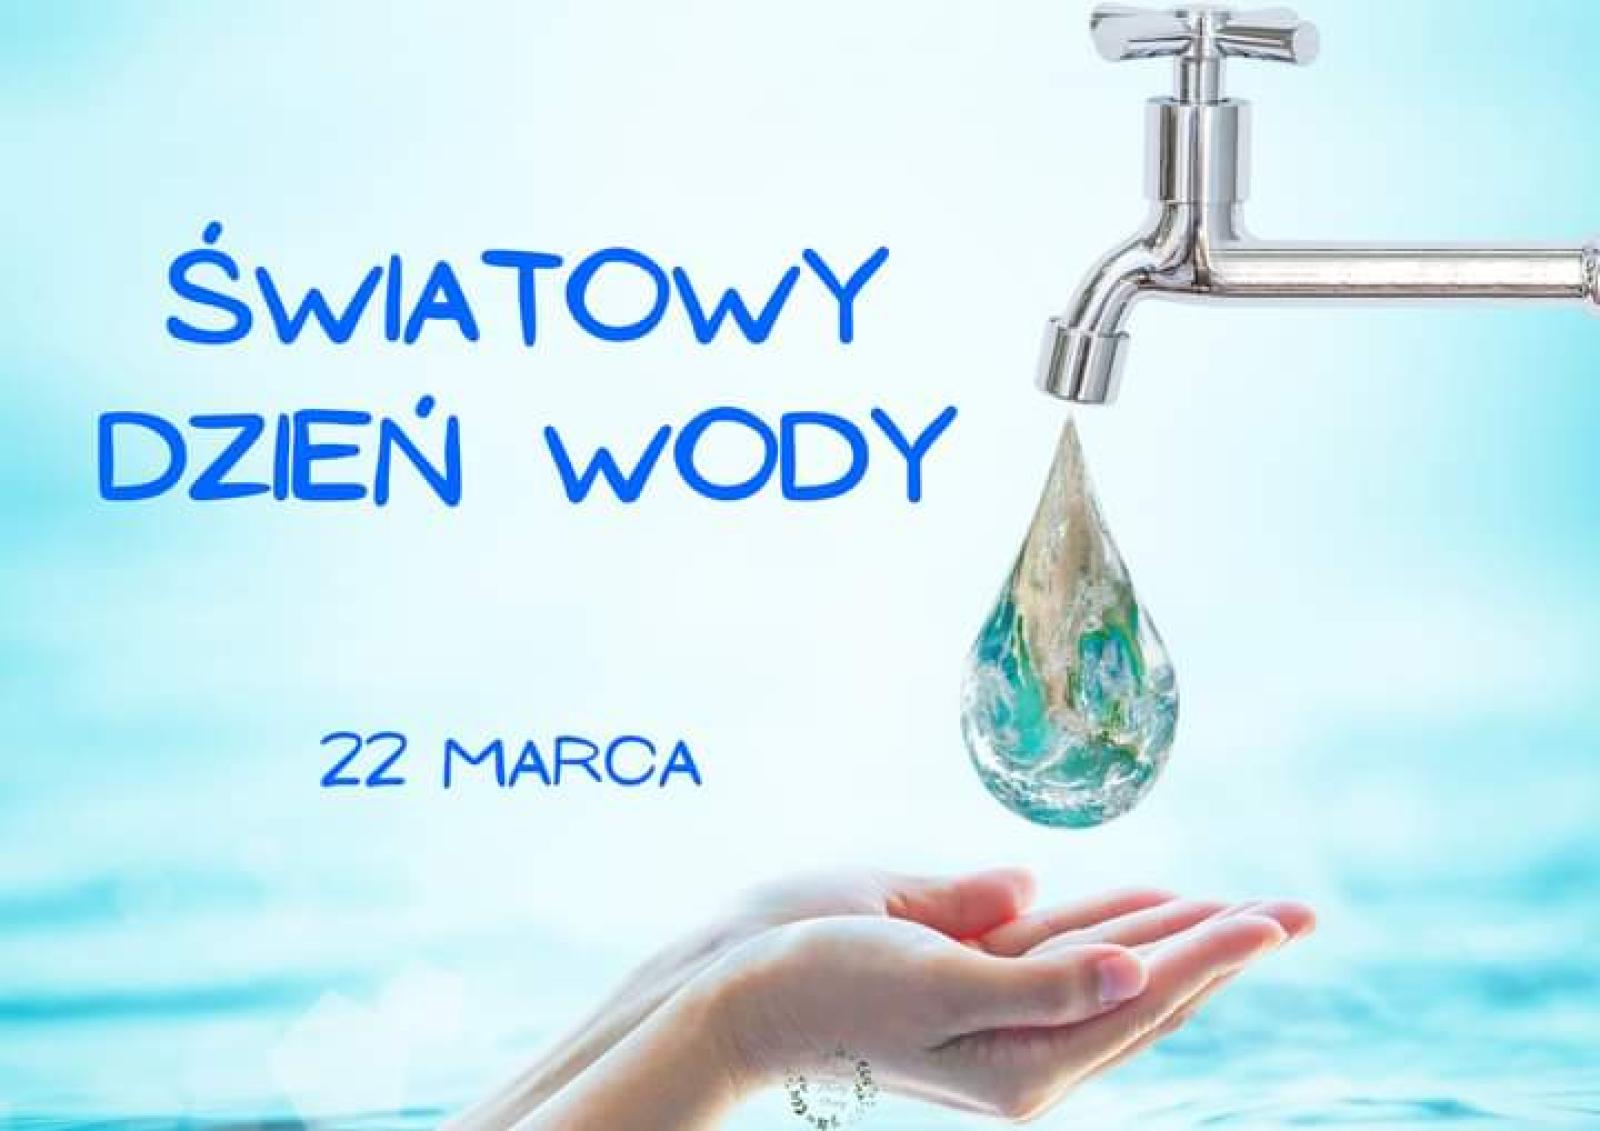 Światowy dzień wody